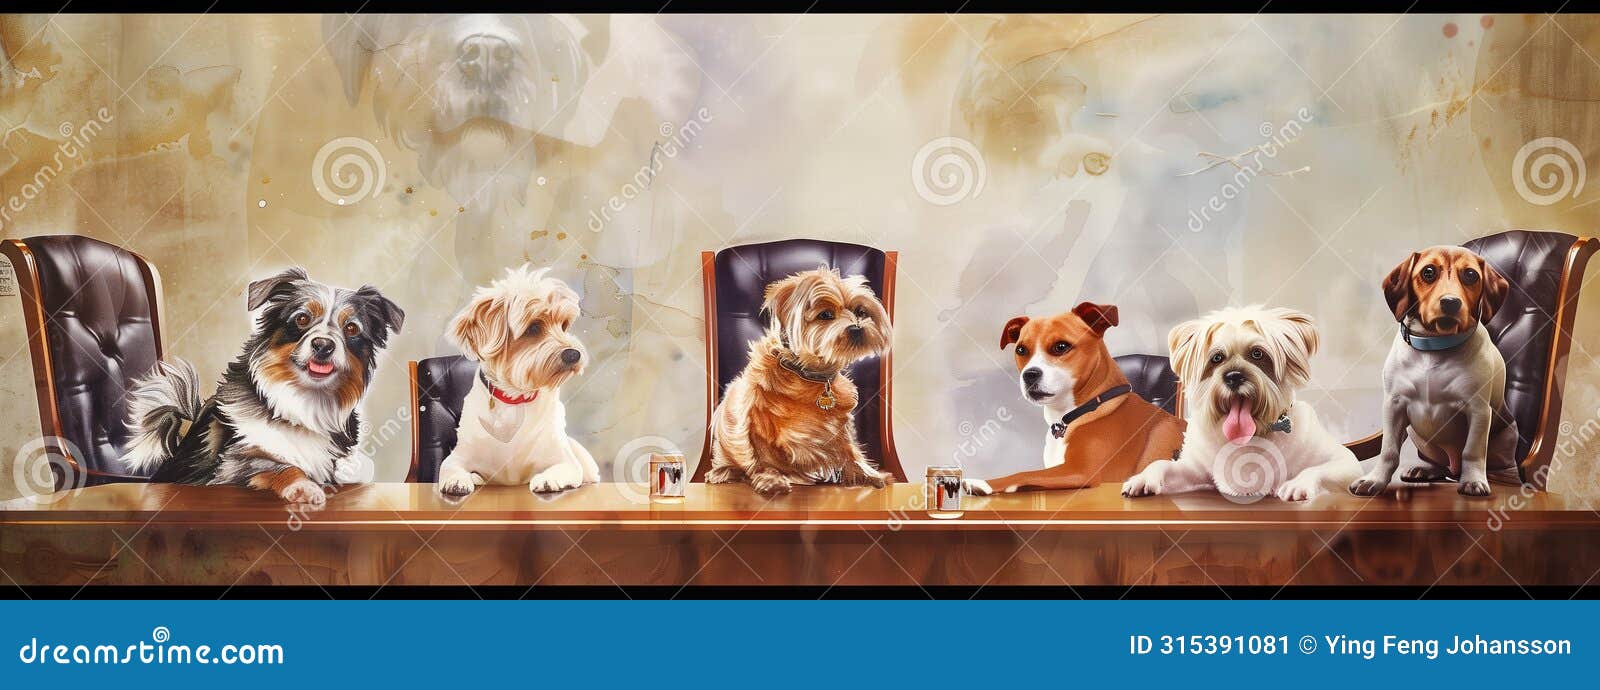 dogs in formal meeting, looking confused an worried. cartoon.